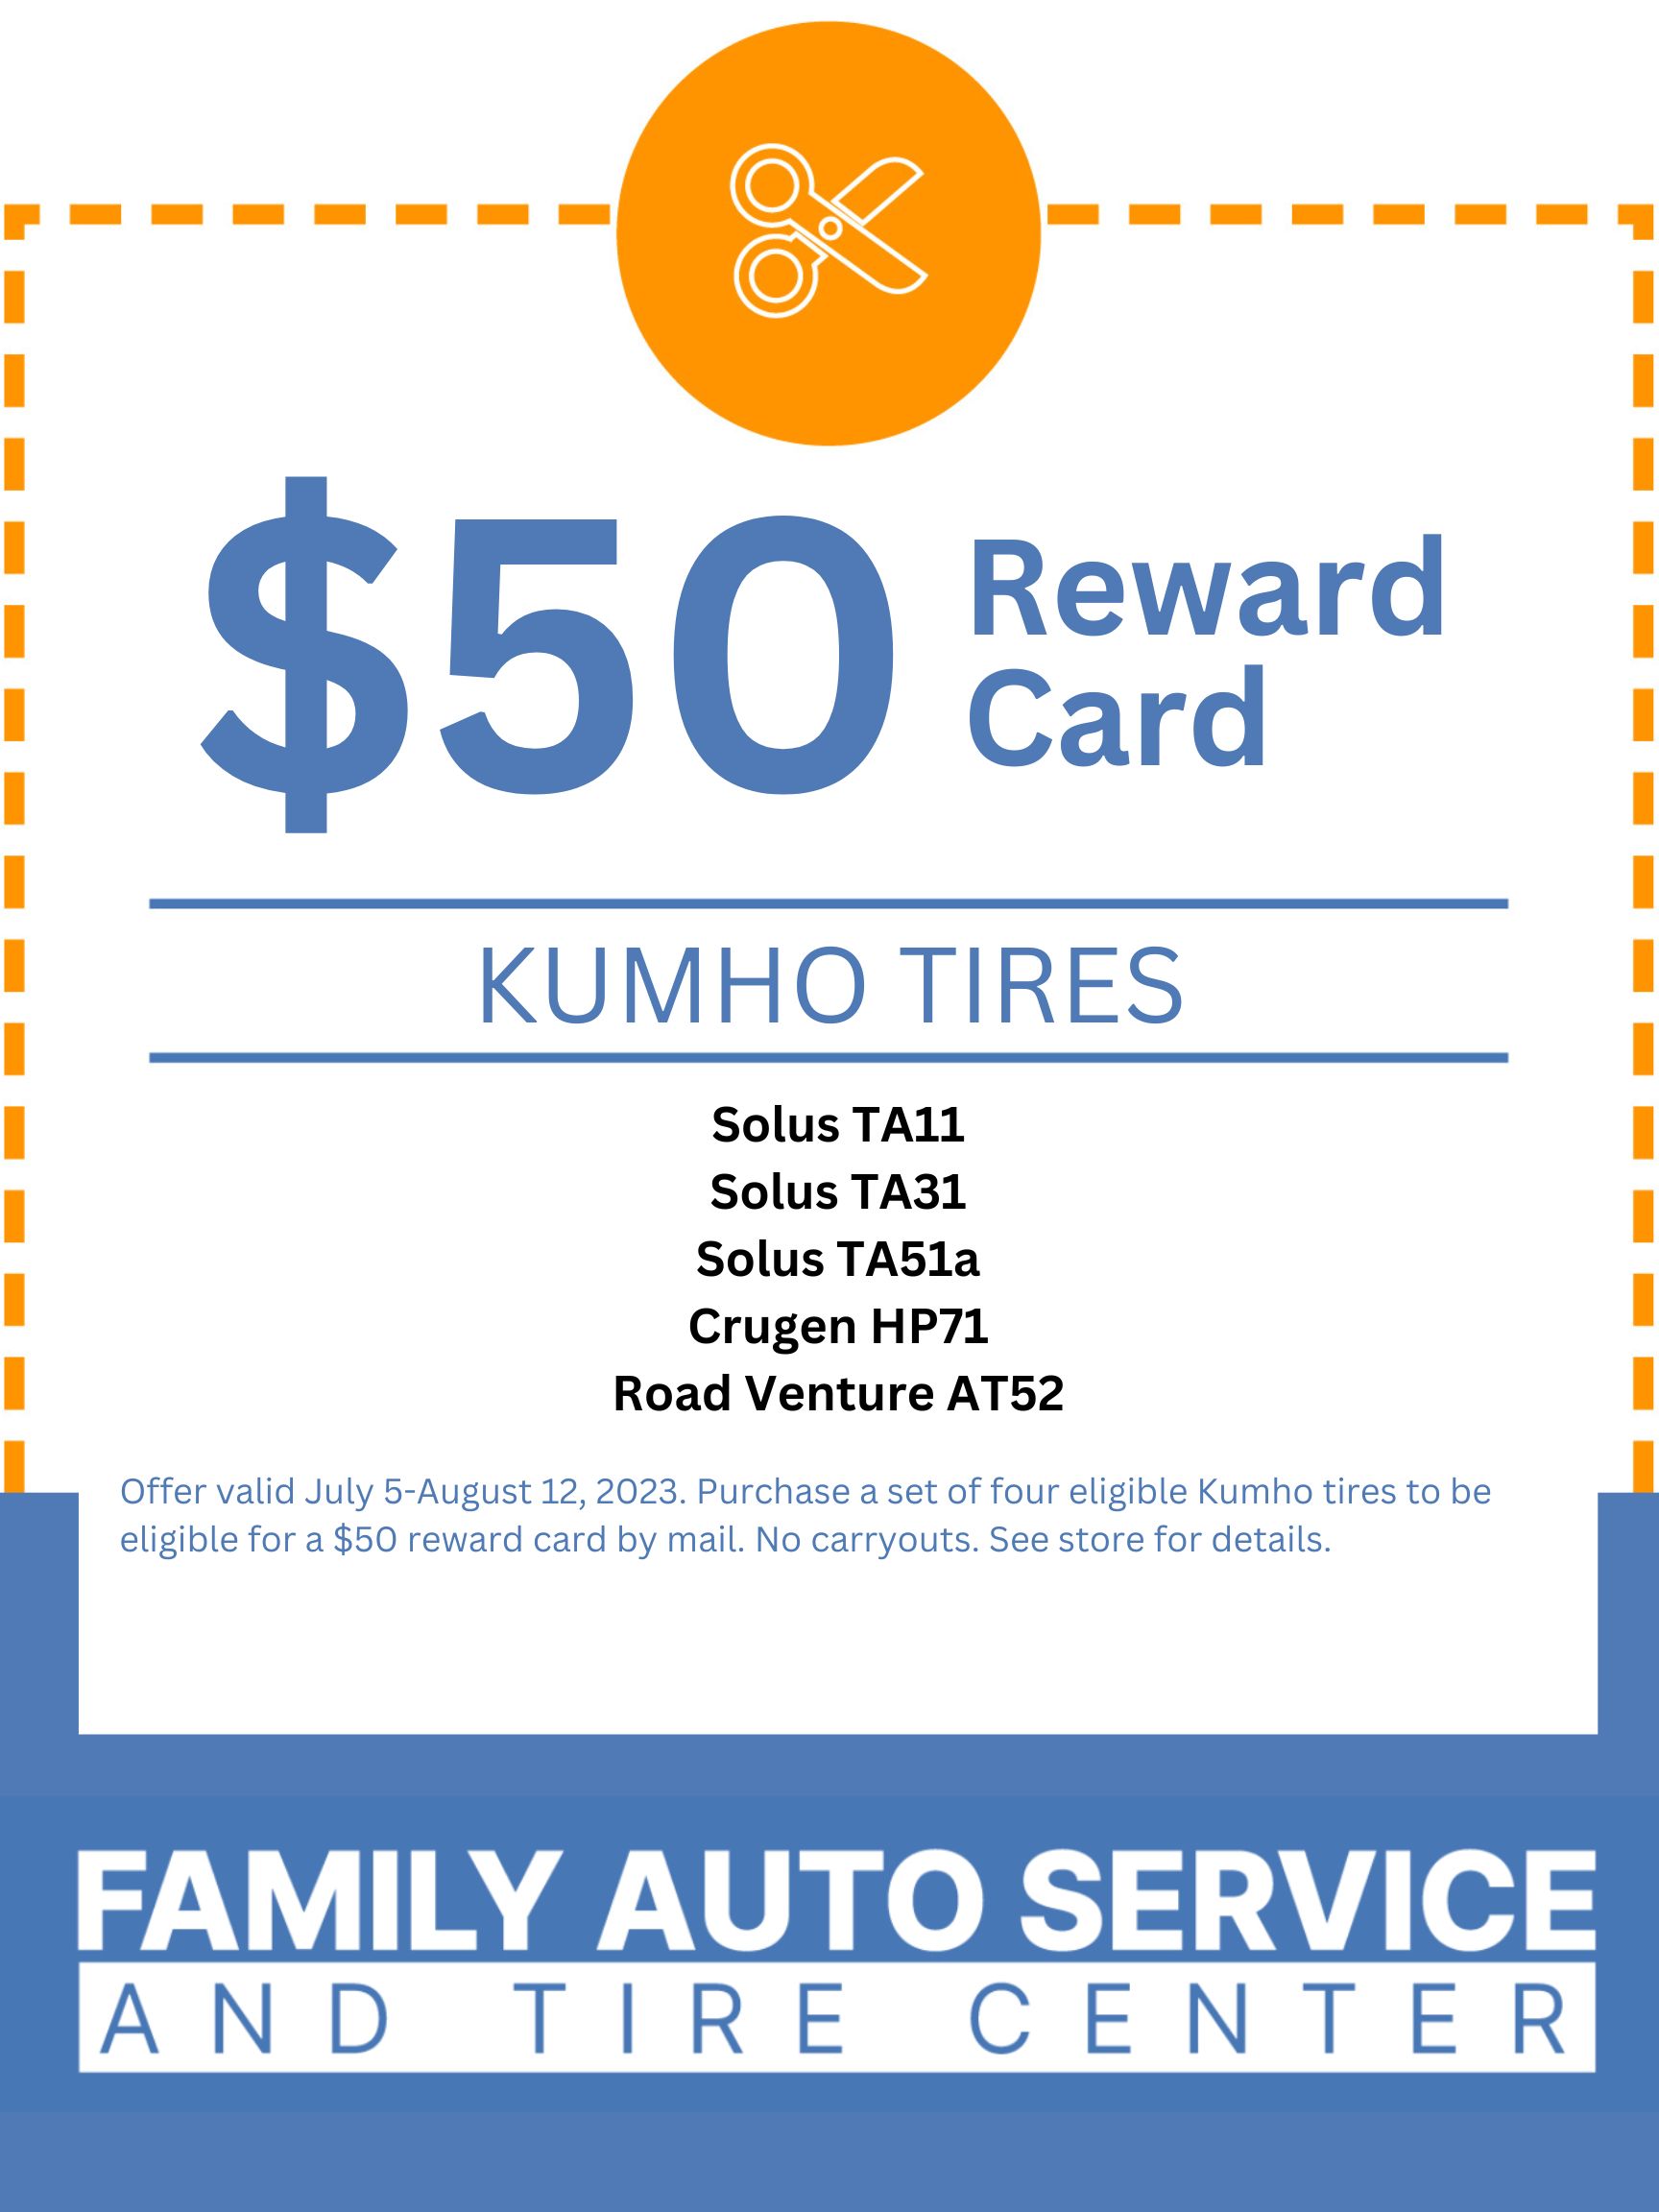 kumho-tires-family-auto-service